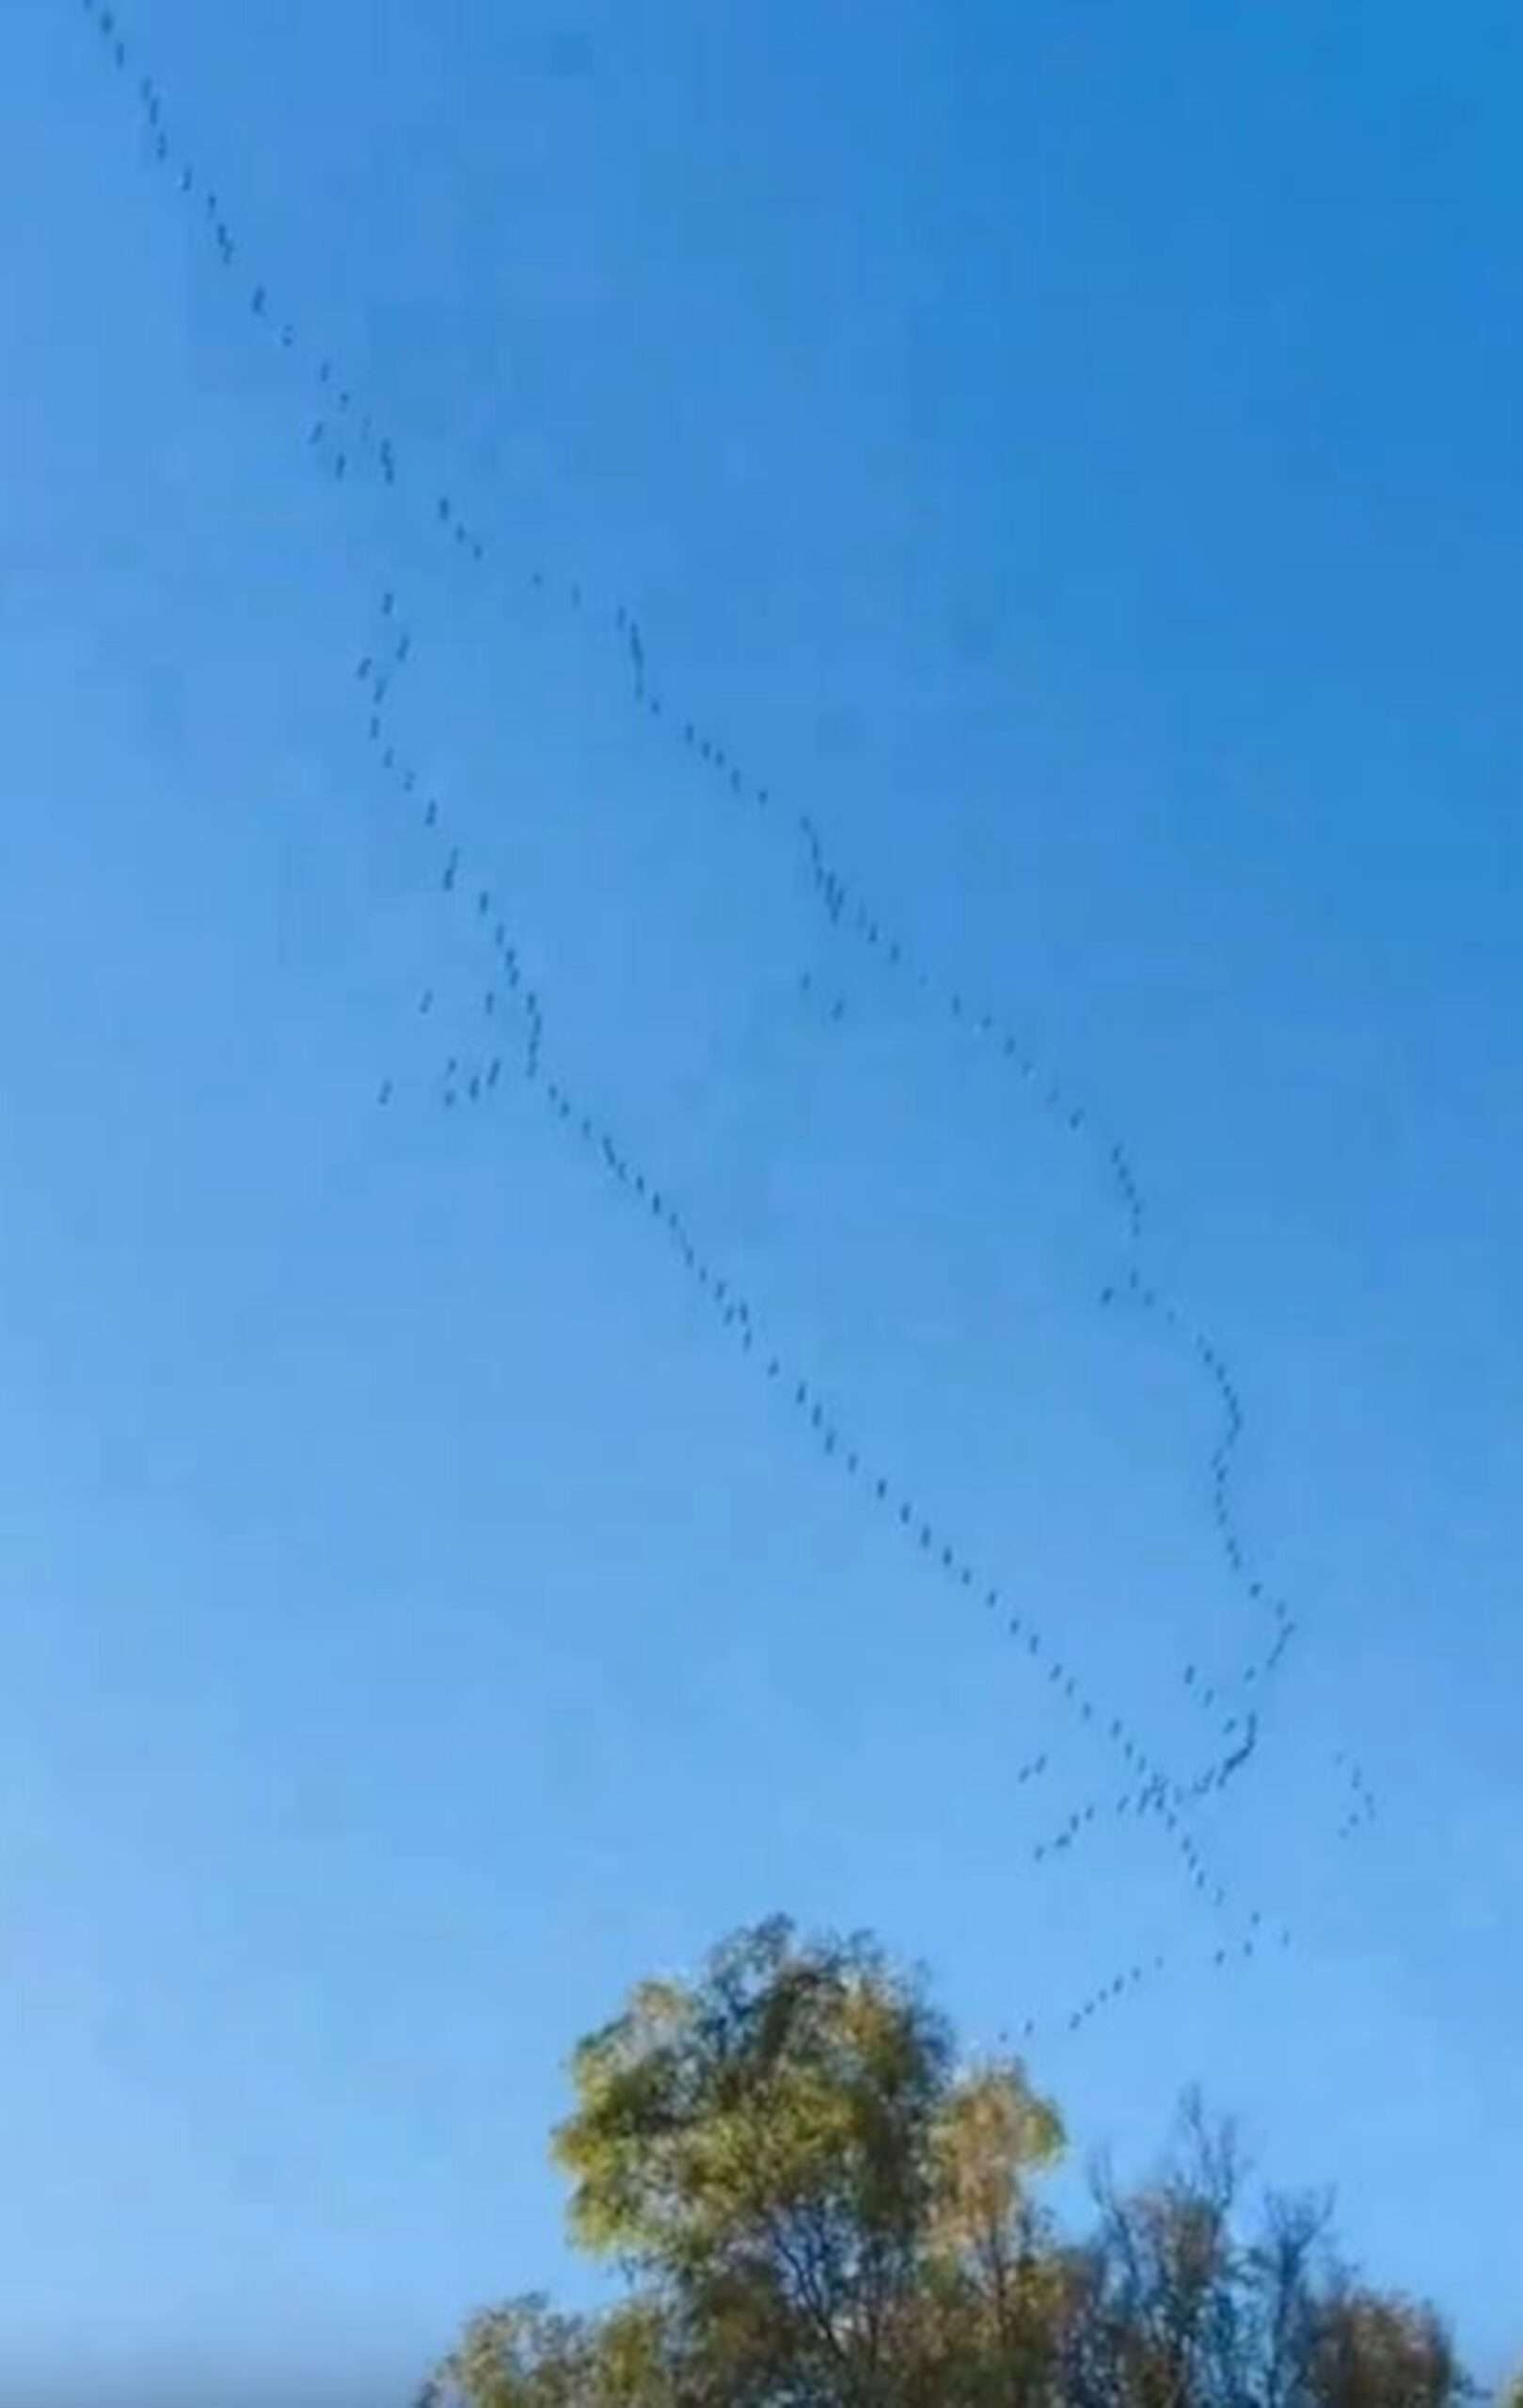 Astonishing Moment Flock Of Birds Form Israeli Flag In Sky